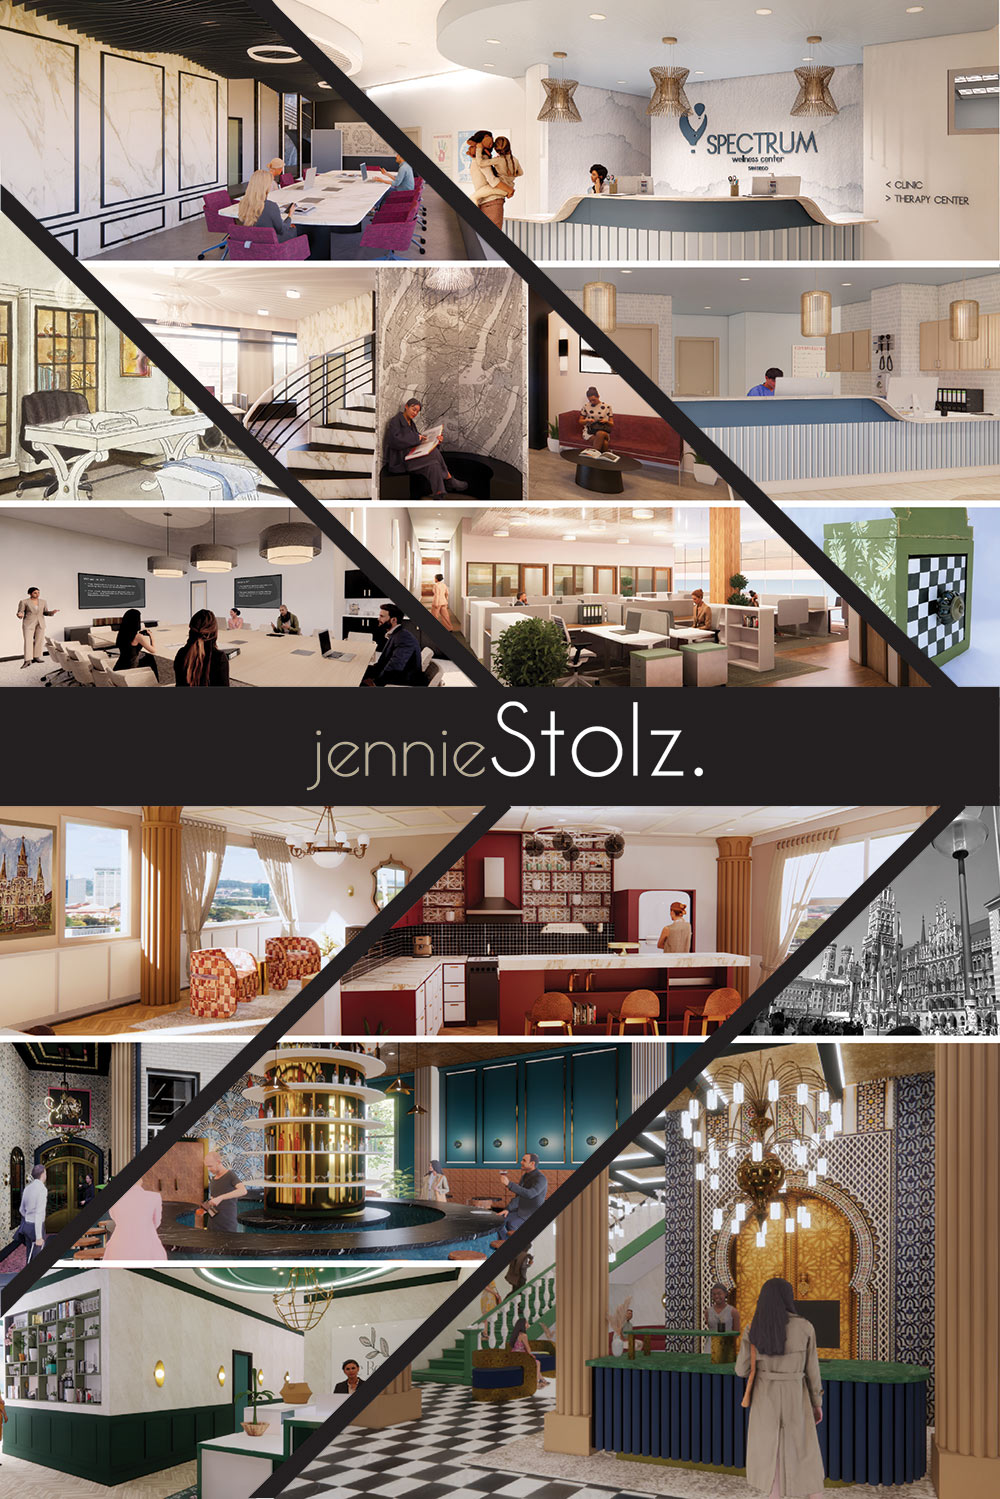 Jennie Stolz's interior design senior exhibit board